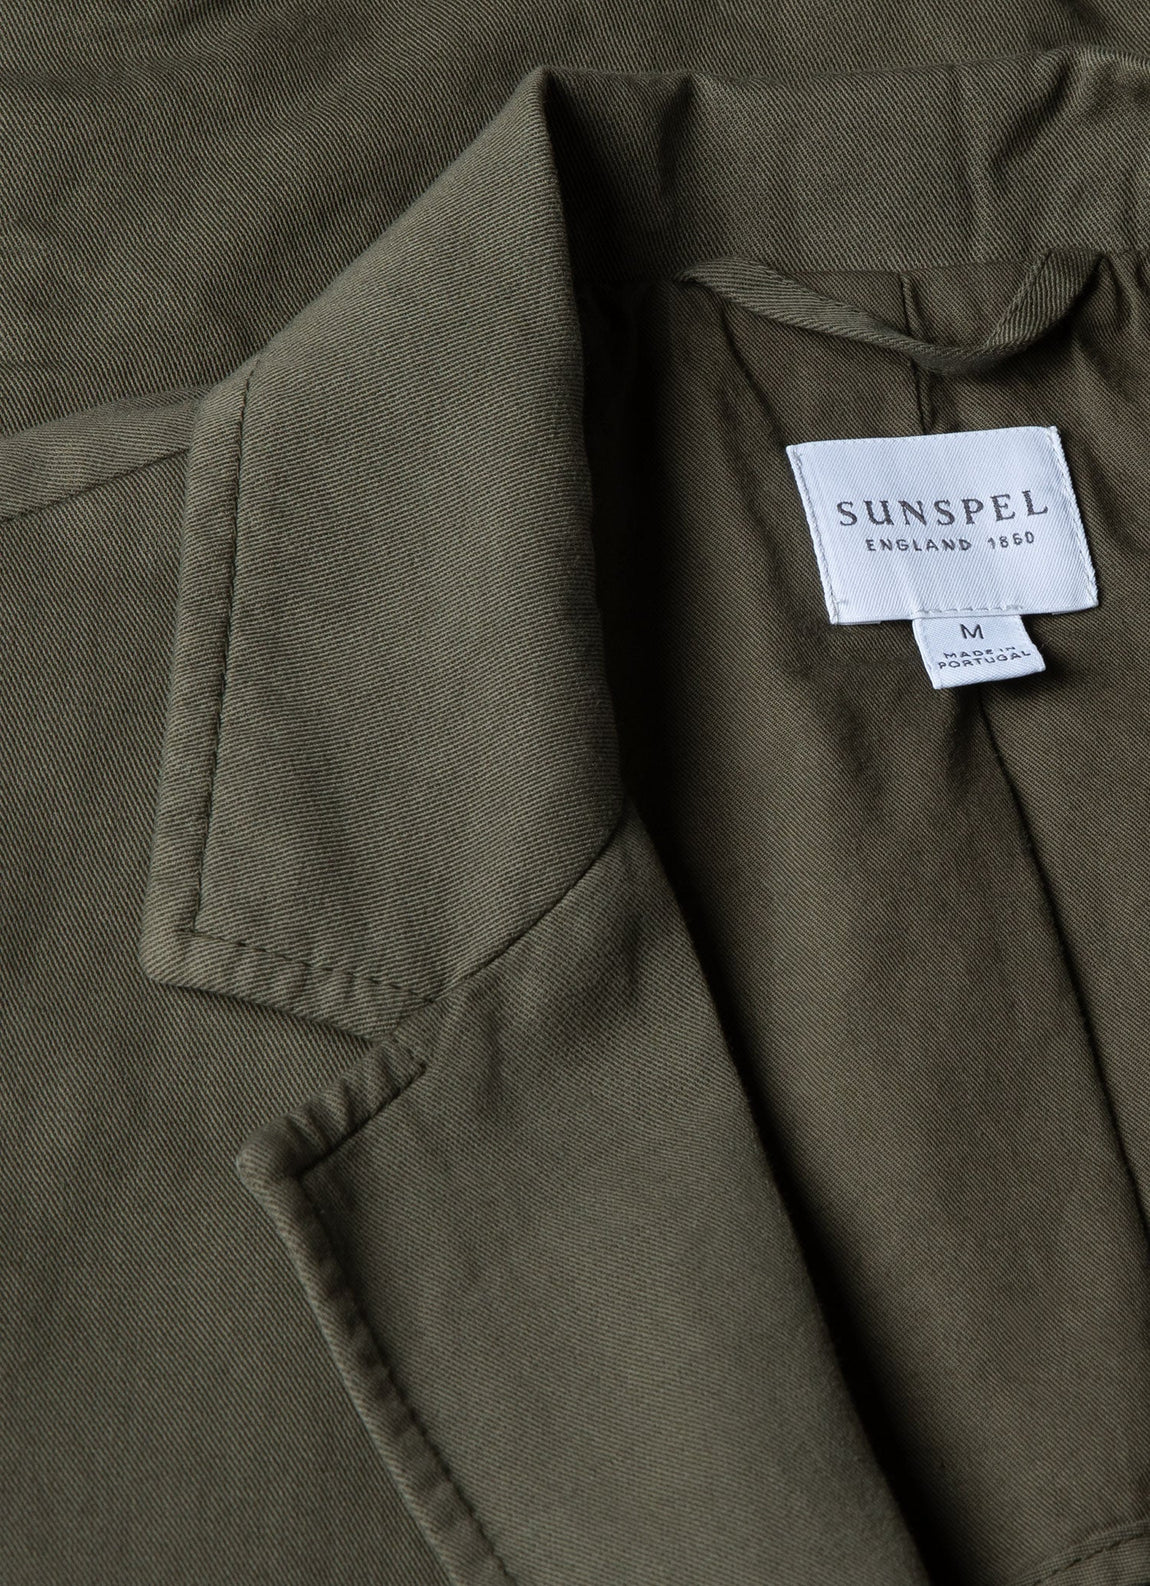 Men's Cotton Linen Two-Piece Suit in Khaki